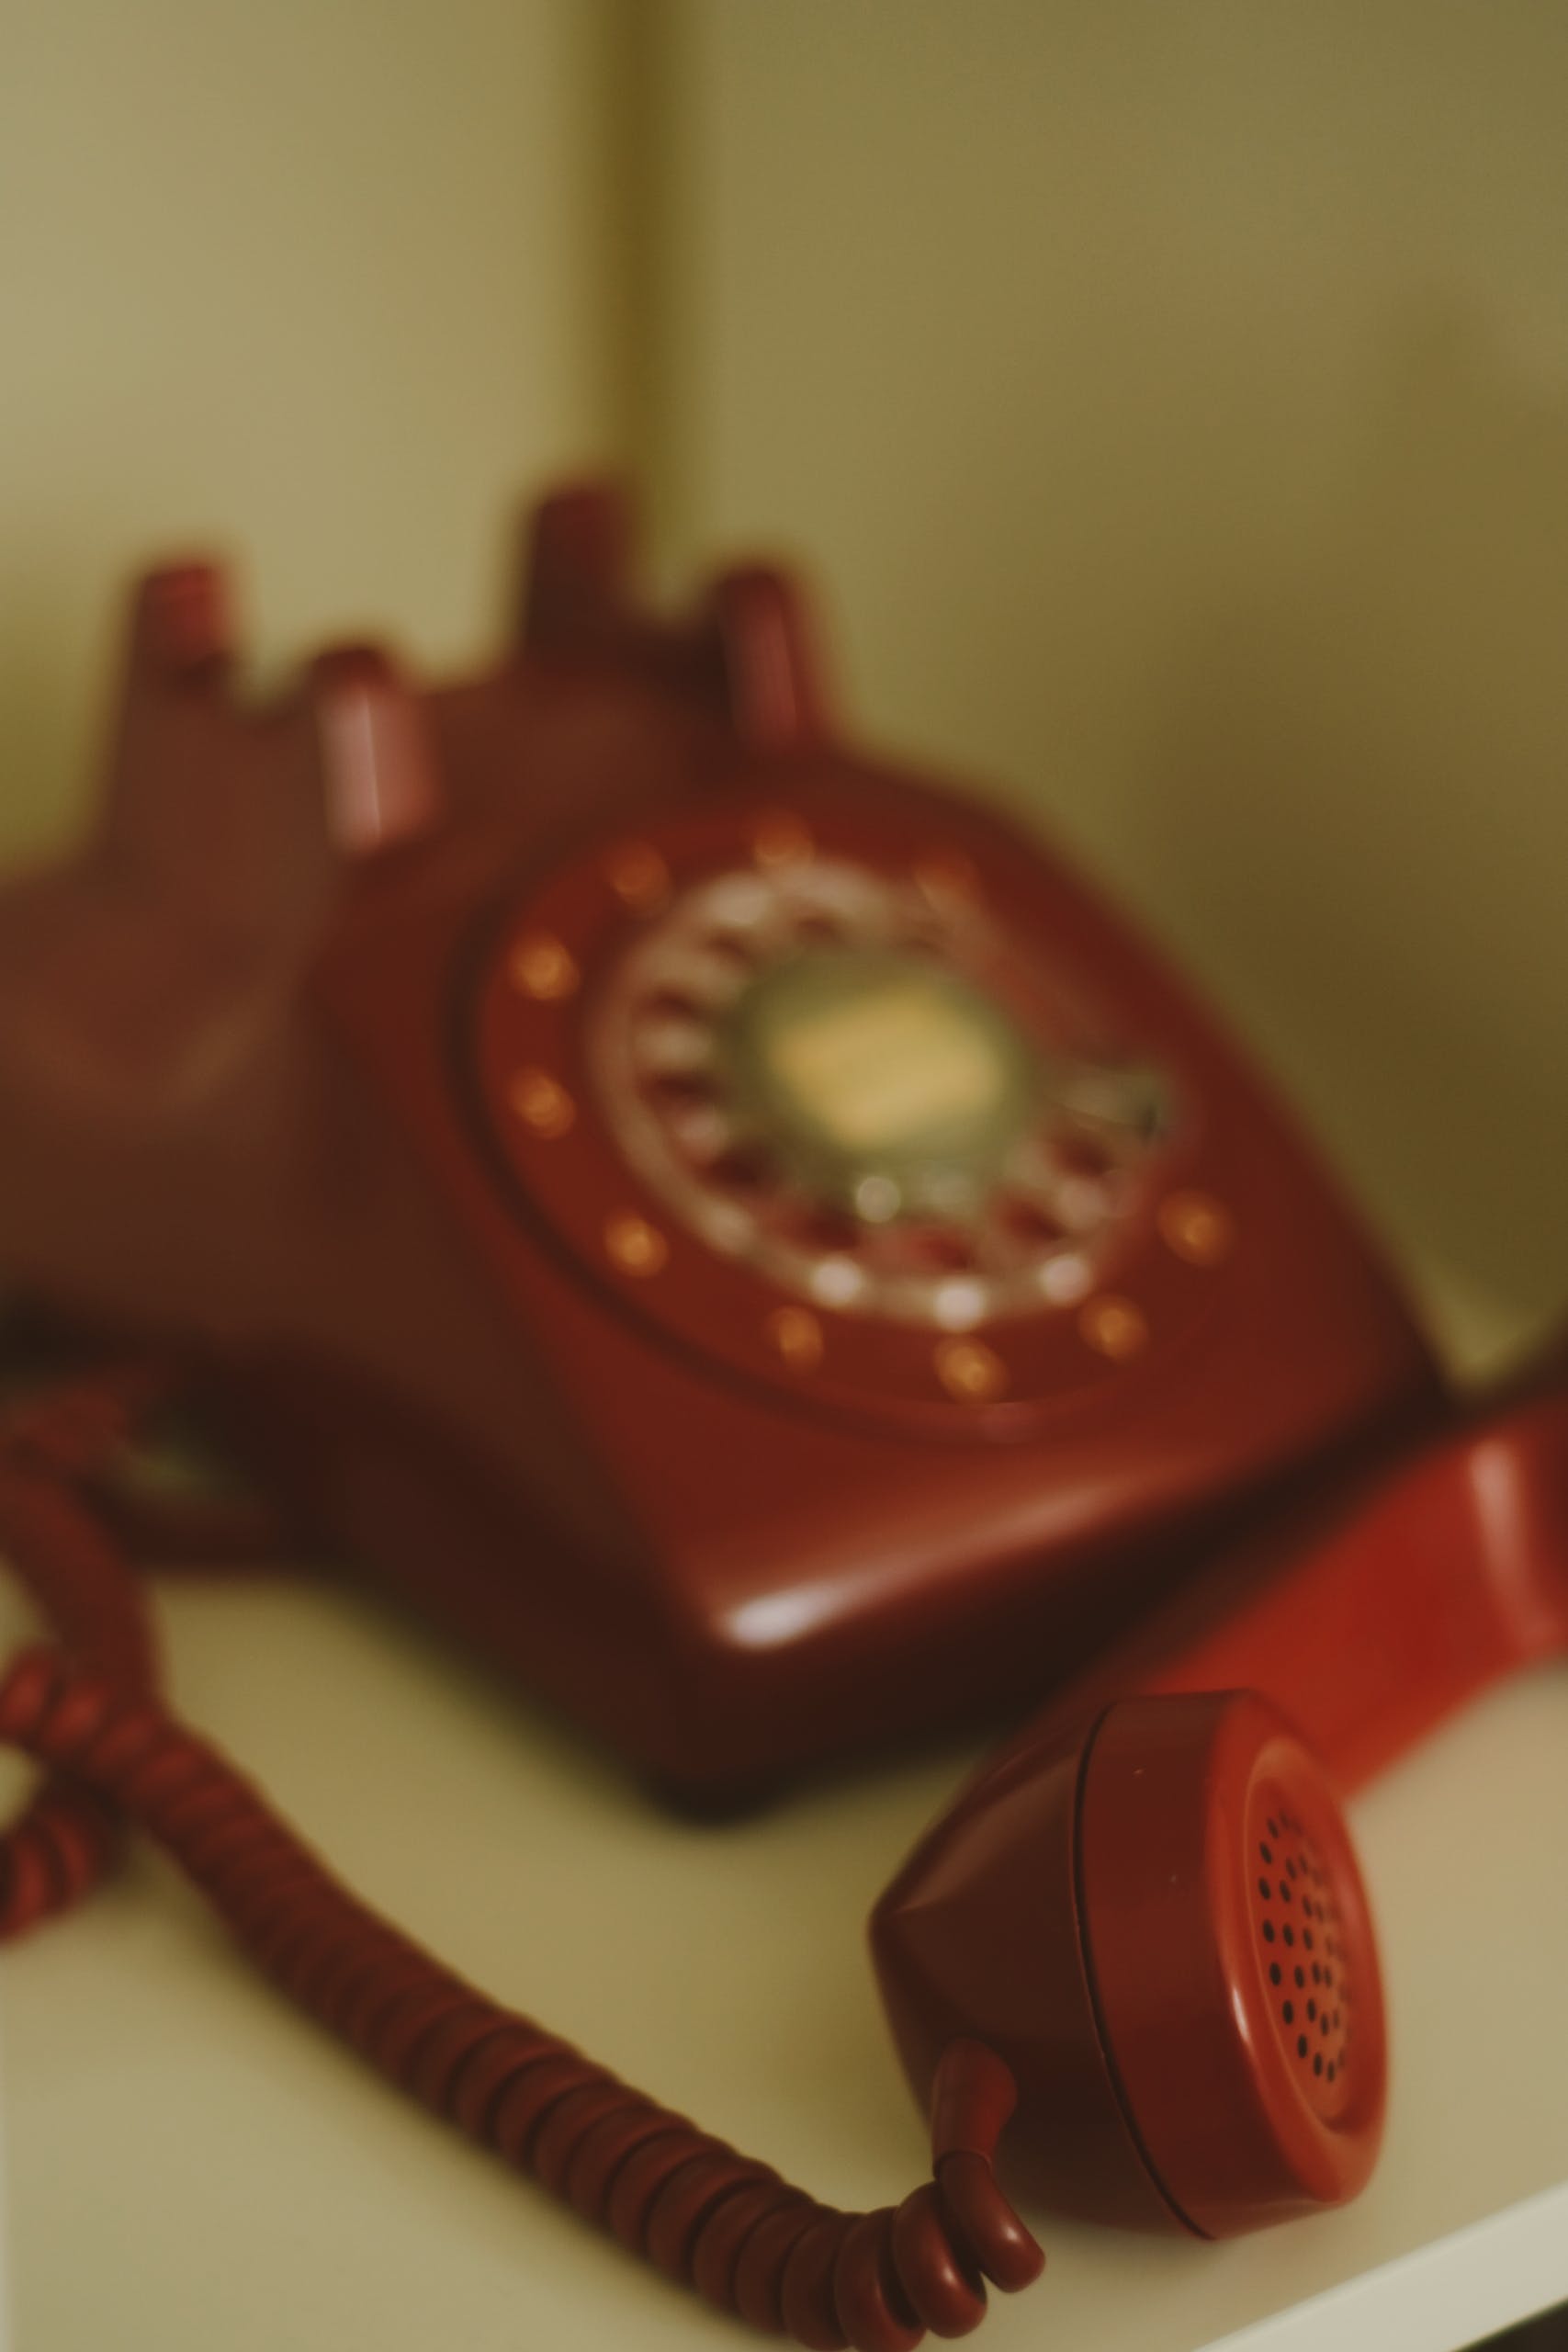 Old phone | Source: Pexels